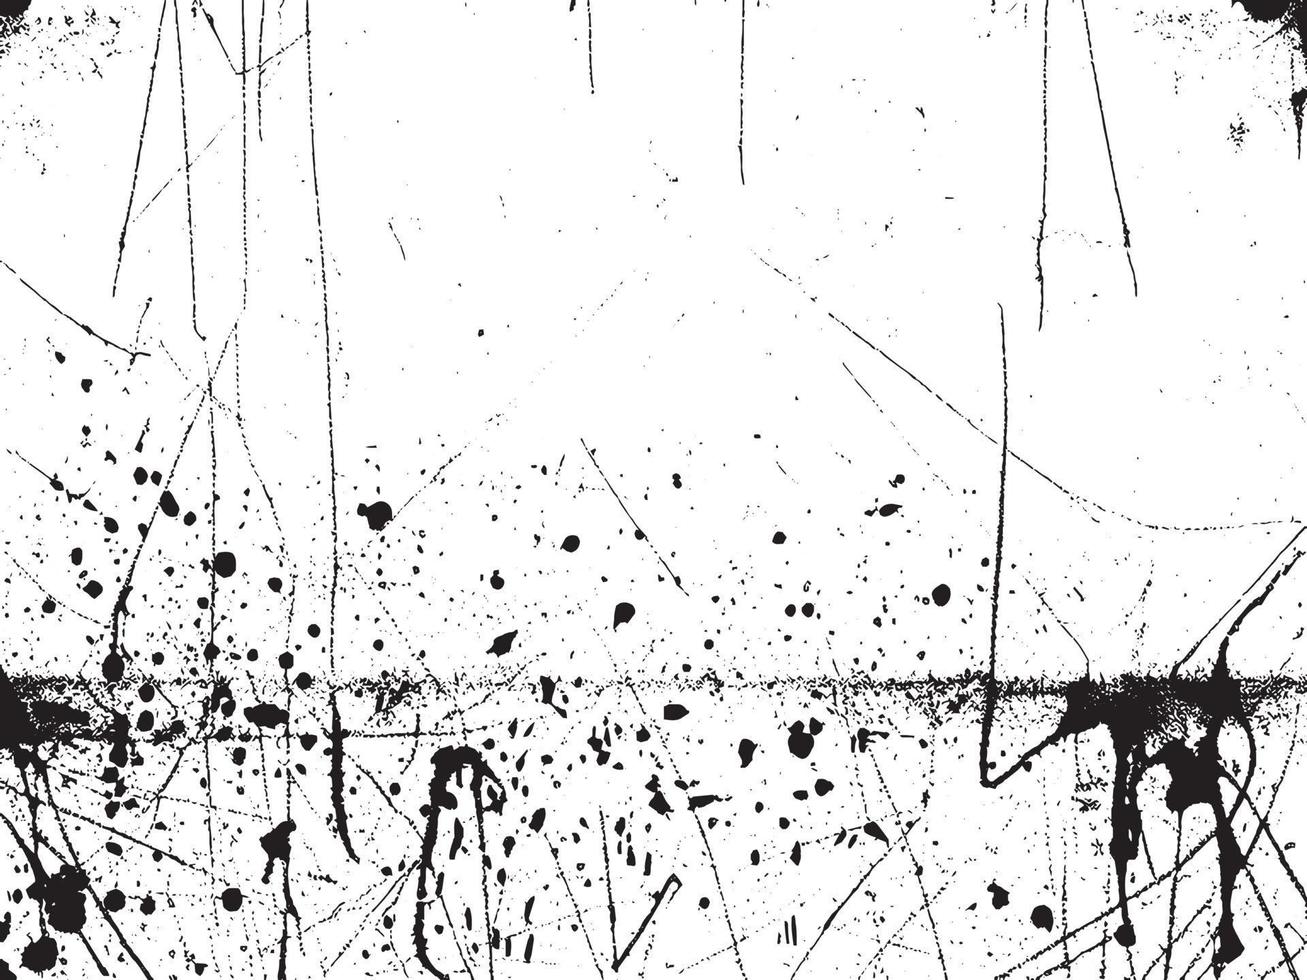 wijnoogst grunge beton muur structuur met verontrust elementen van krijt, vlekken, krassen, en lawaai in zwart en wit. vector eps 10